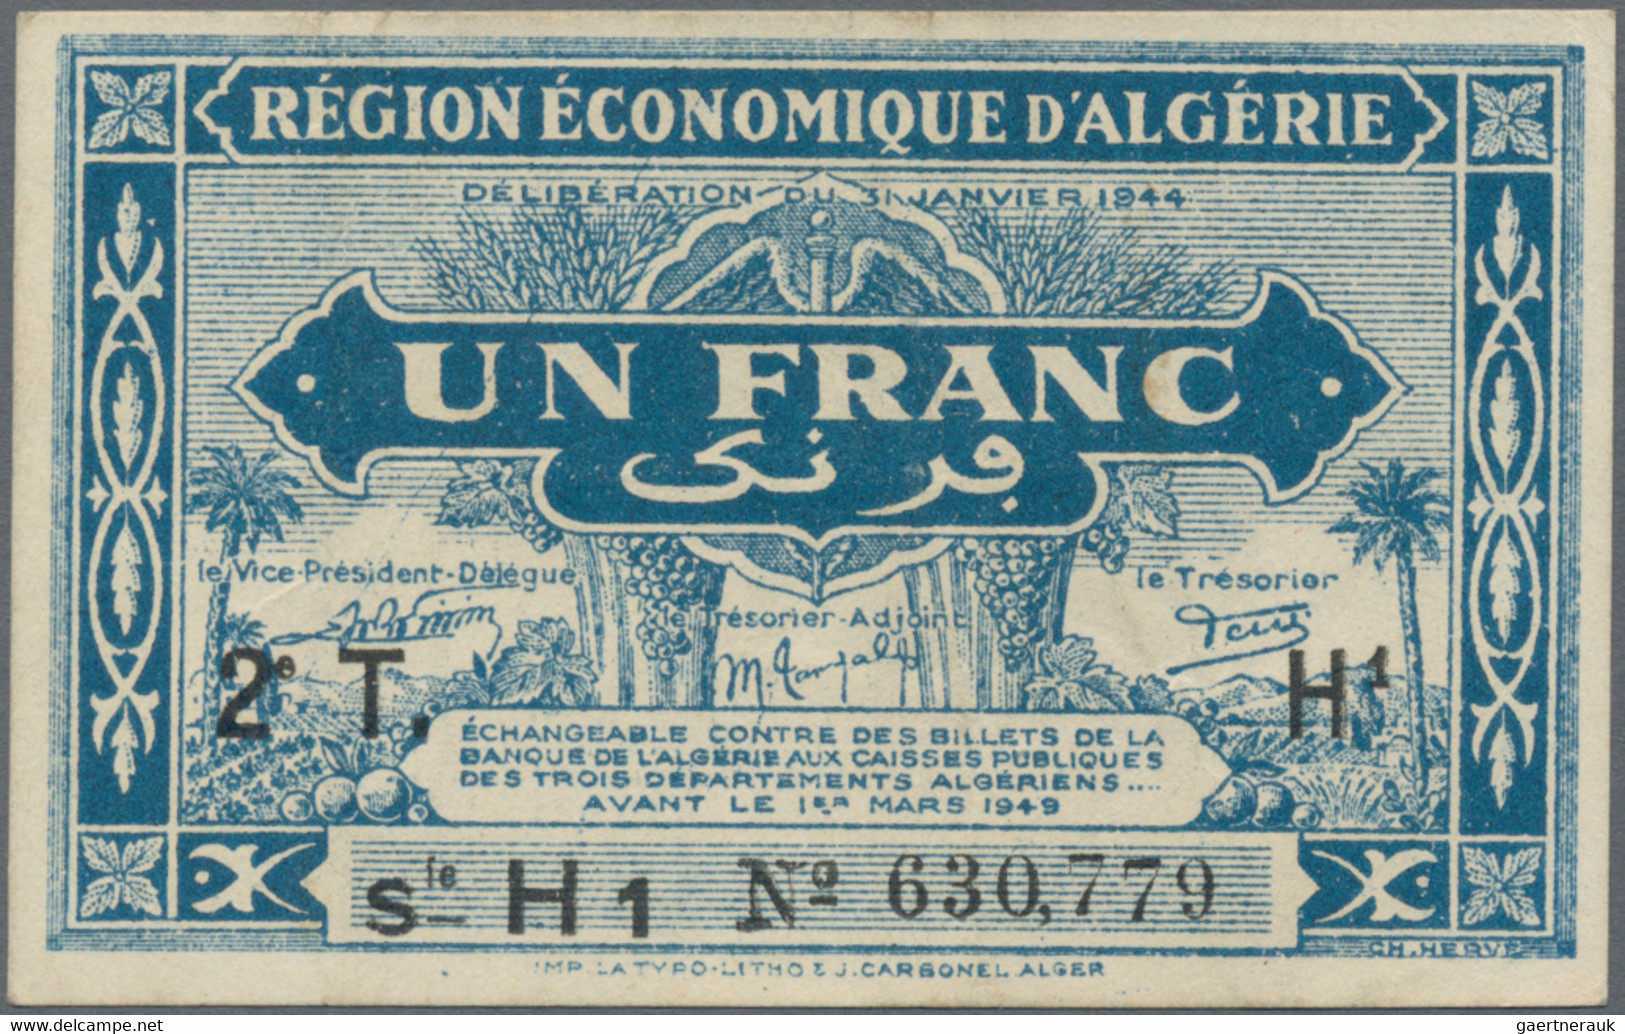 Algeria: Trésorerie - Région Économique D'Algérie, Lot With 4 Banknotes L.1944 S - Algerien